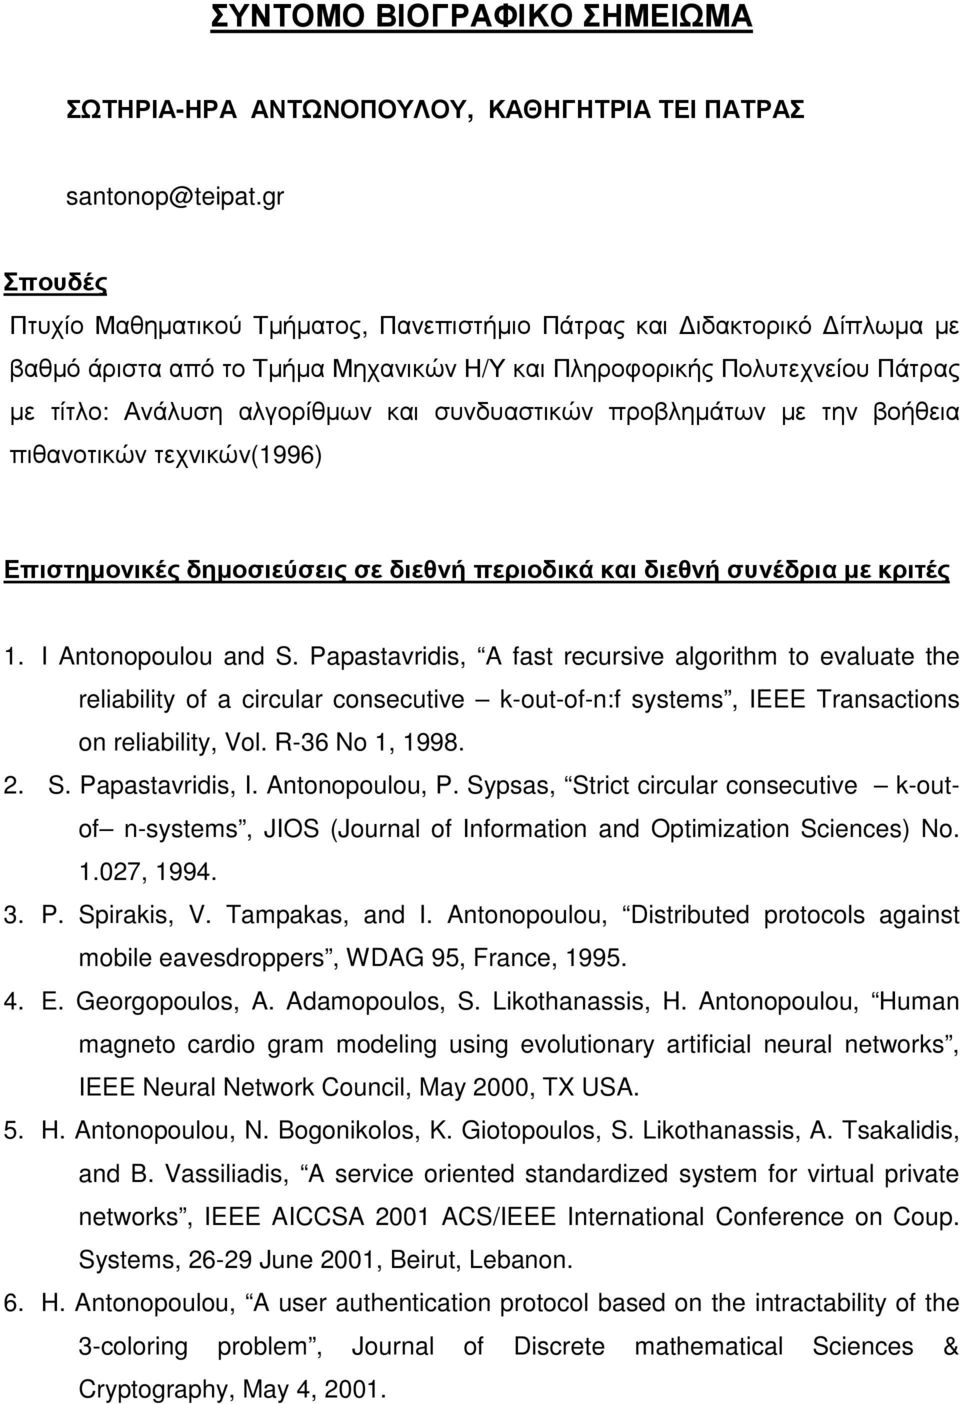 συνδυαστικών προβληµάτων µε την βοήθεια πιθανοτικών τεχνικών(1996) Επιστηµονικές δηµοσιεύσεις σε διεθνή περιοδικά και διεθνή συνέδρια µε κριτές 1. I Antonopoulou and S.